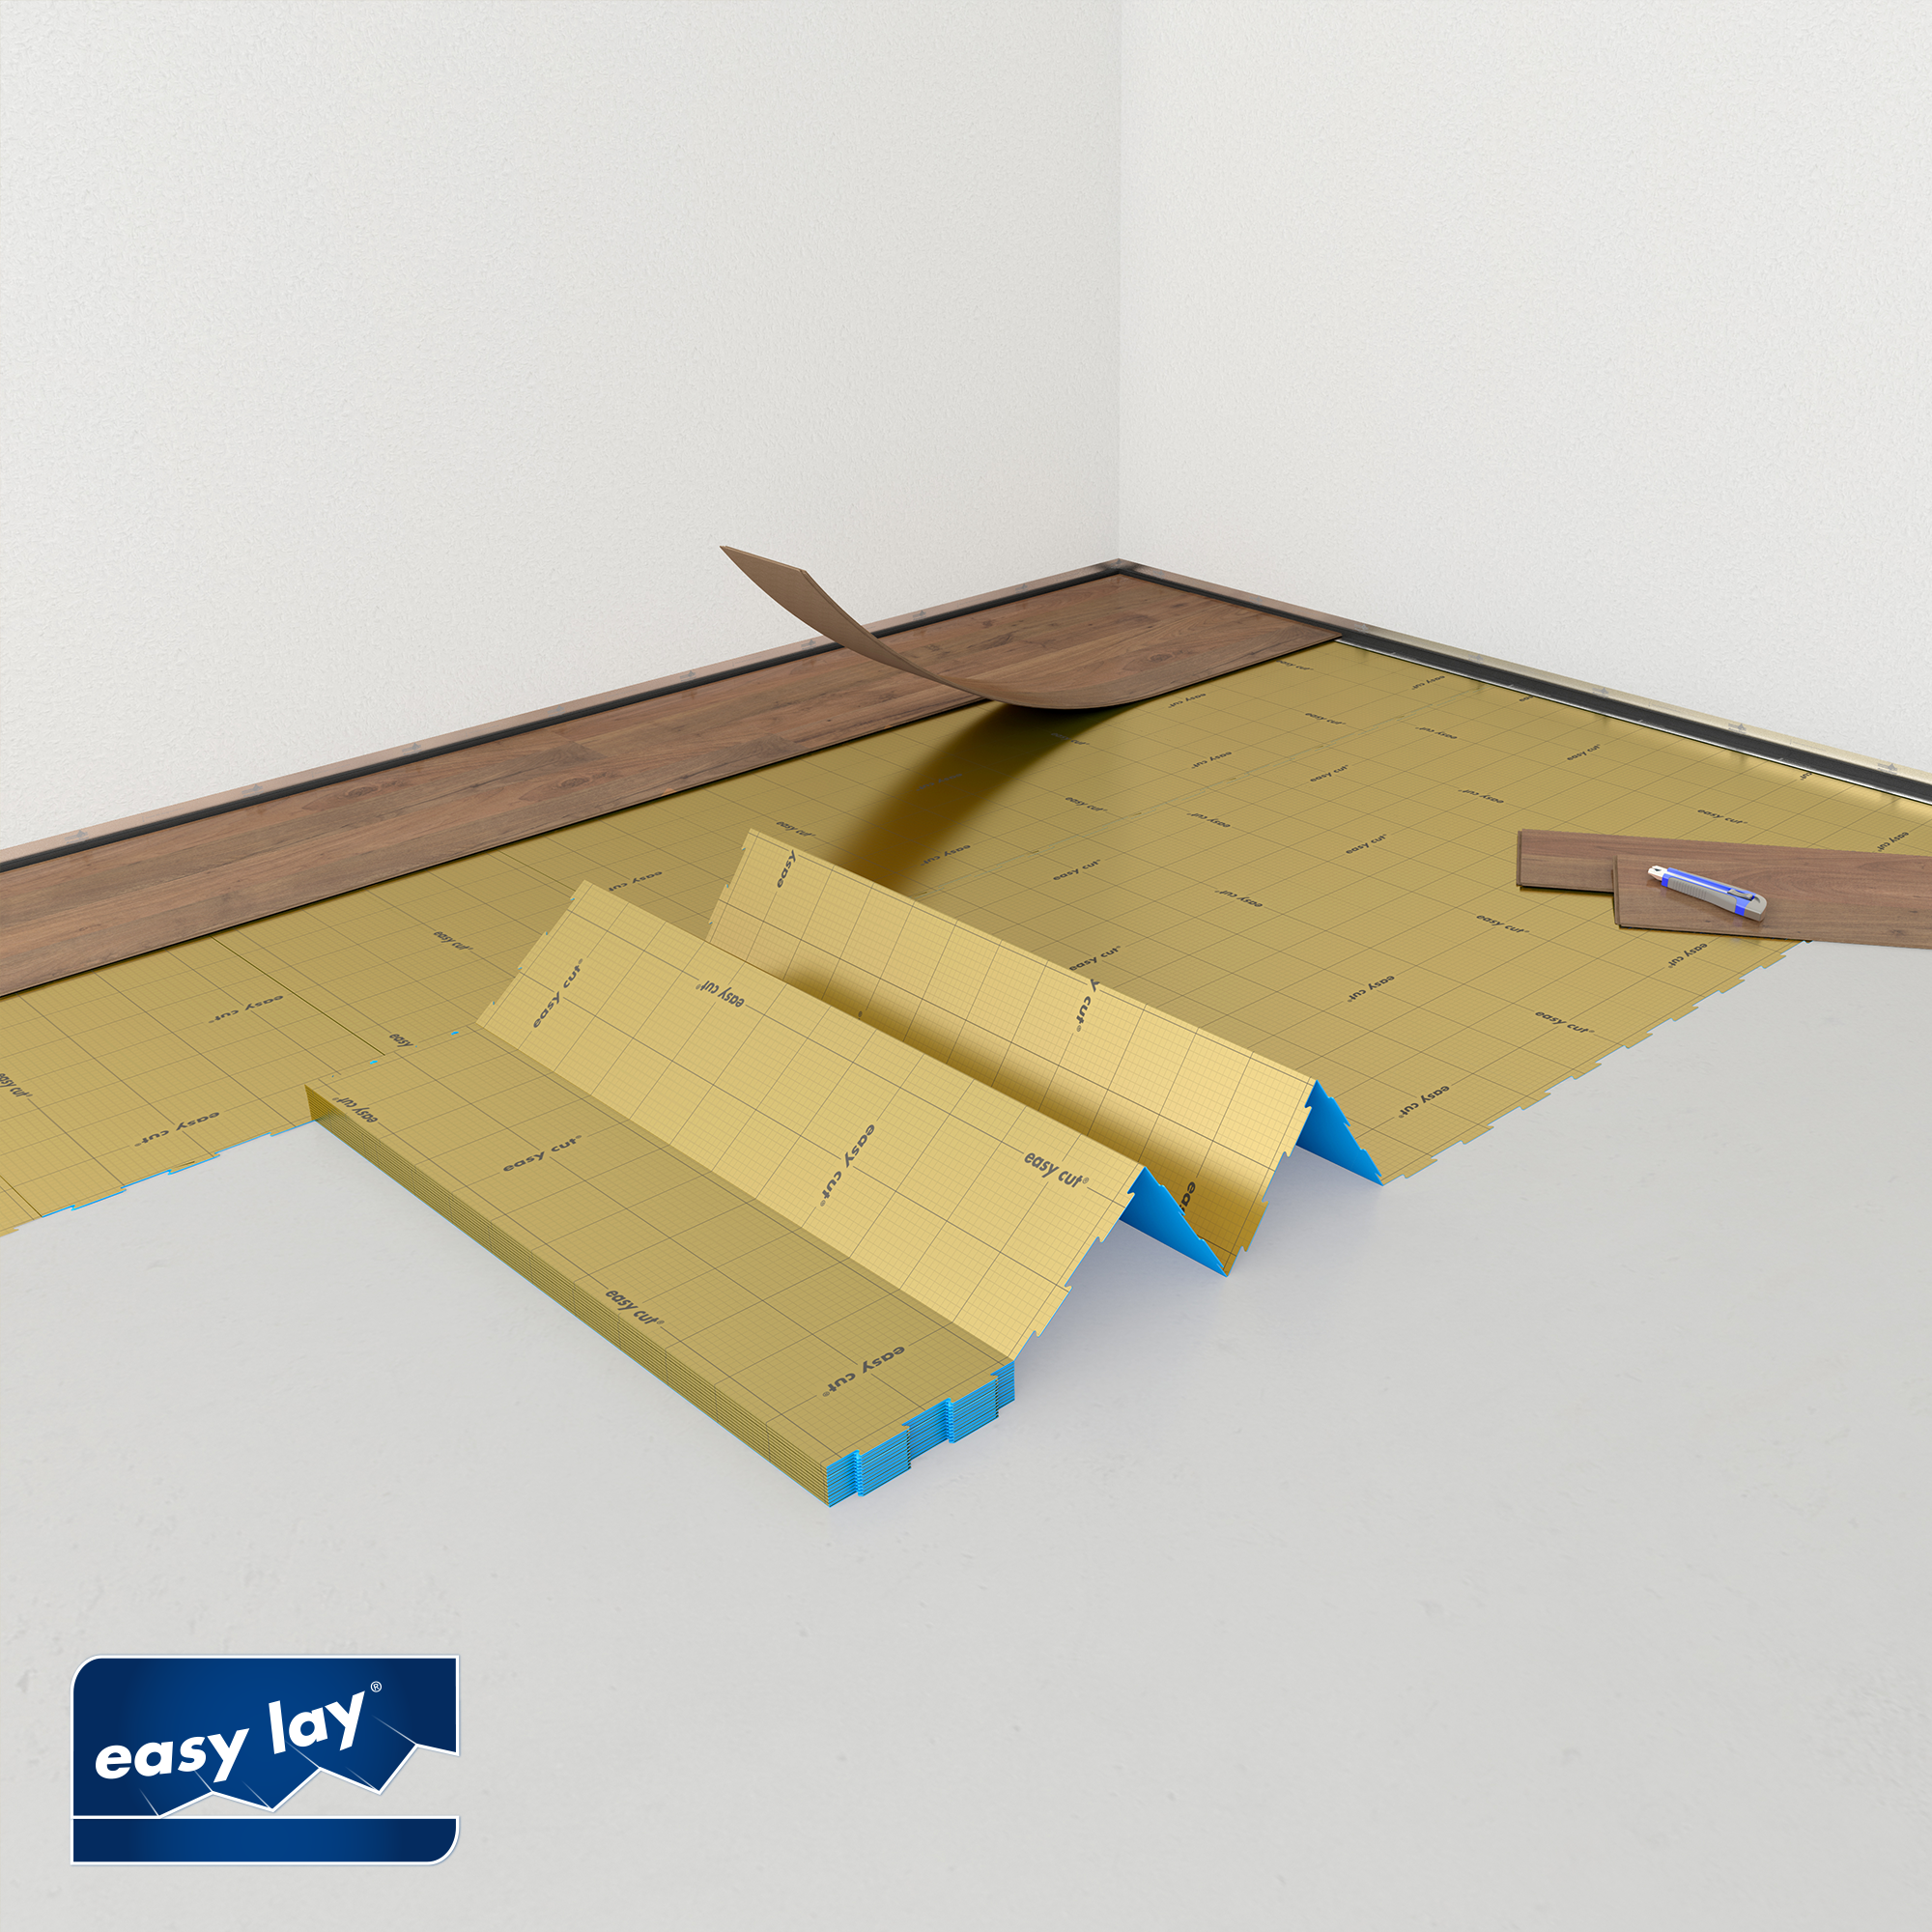 Vinyl-/Designbodenunterlage 'Selitbloc' GripTec-Oberfläche 1,5 mm, 12 m² + product picture